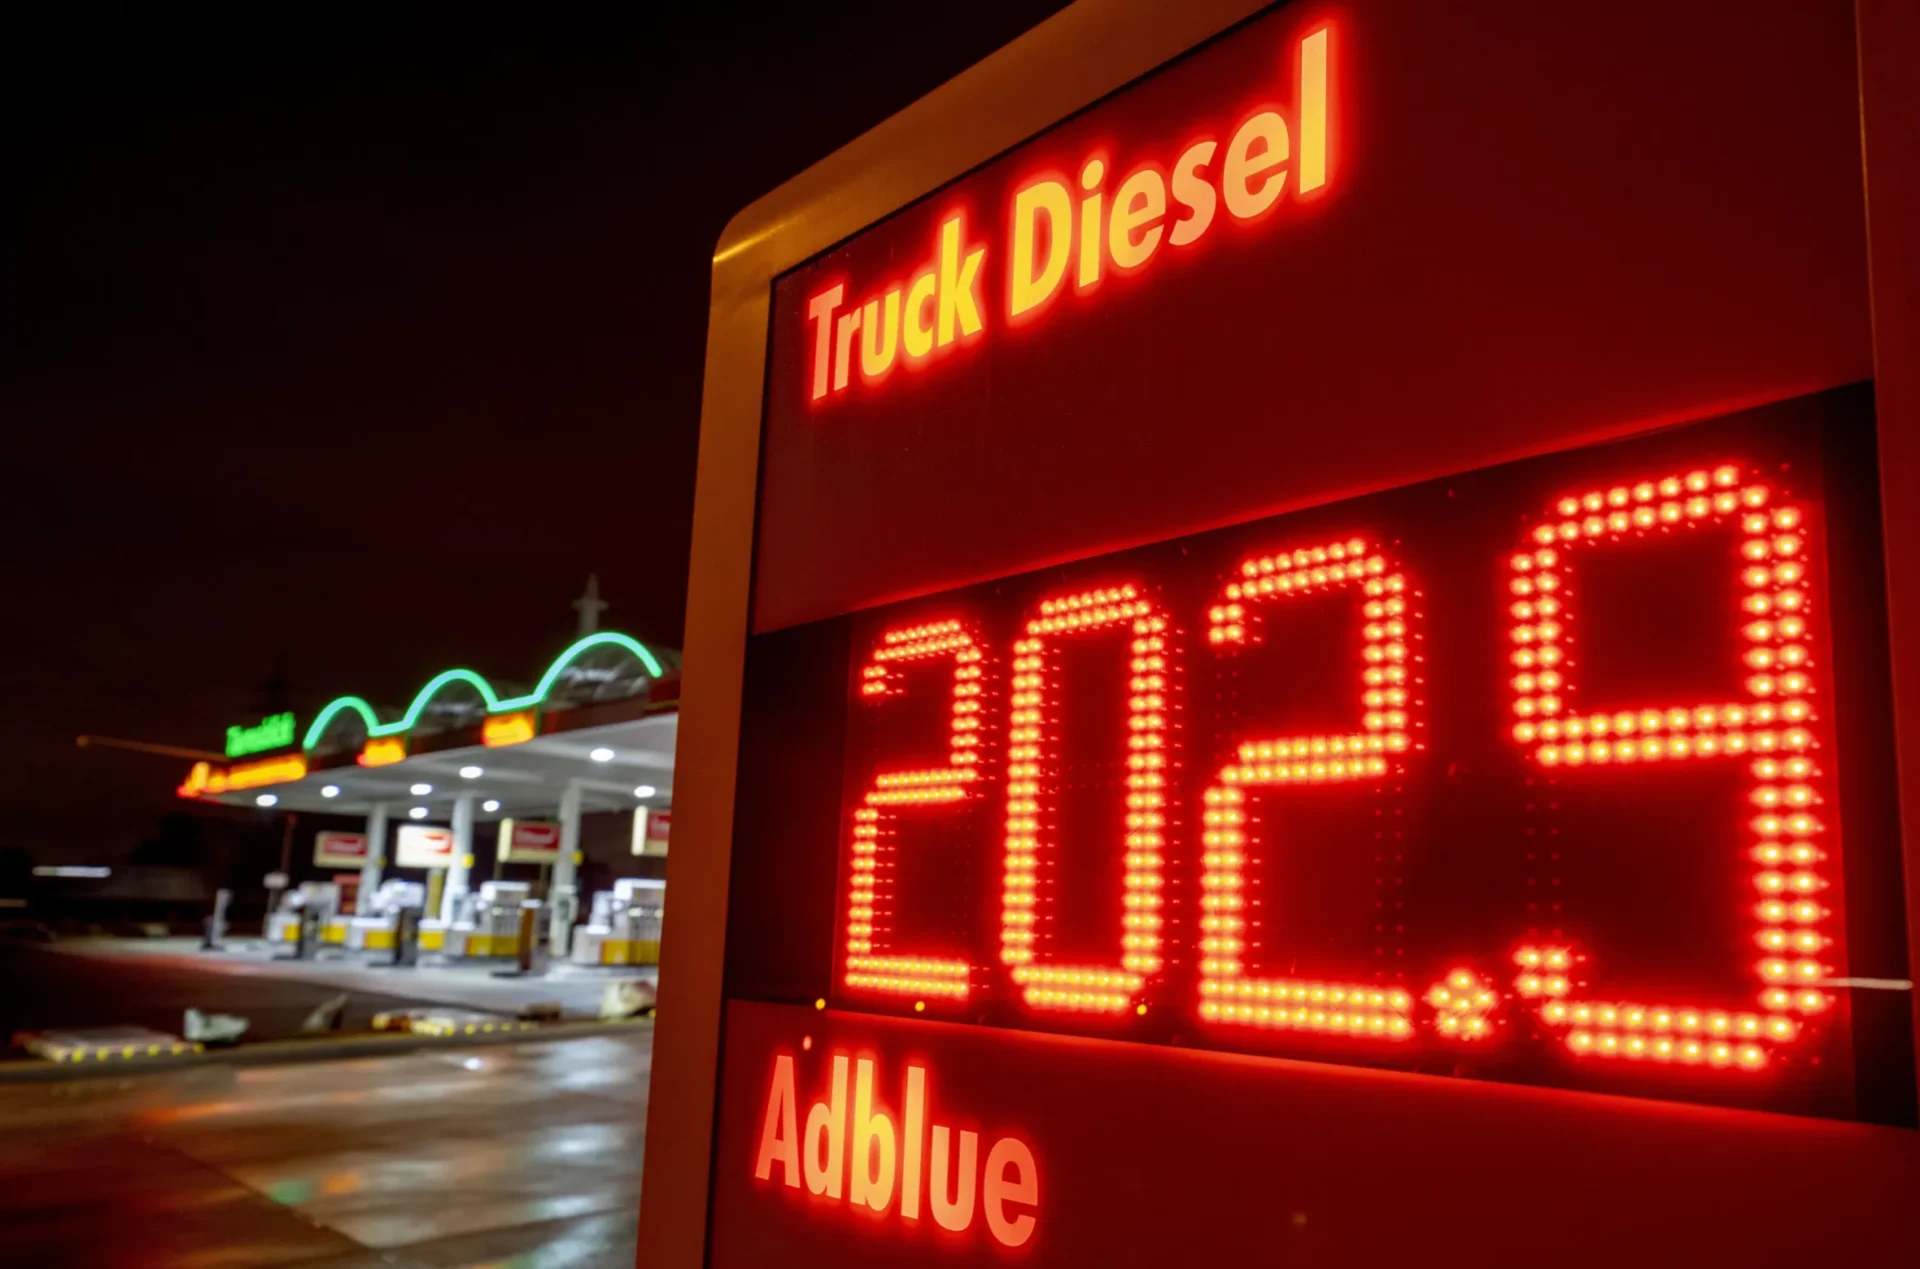 ¿La prohibición europea del diesel ruso aumentará los precios mundiales del combustible?